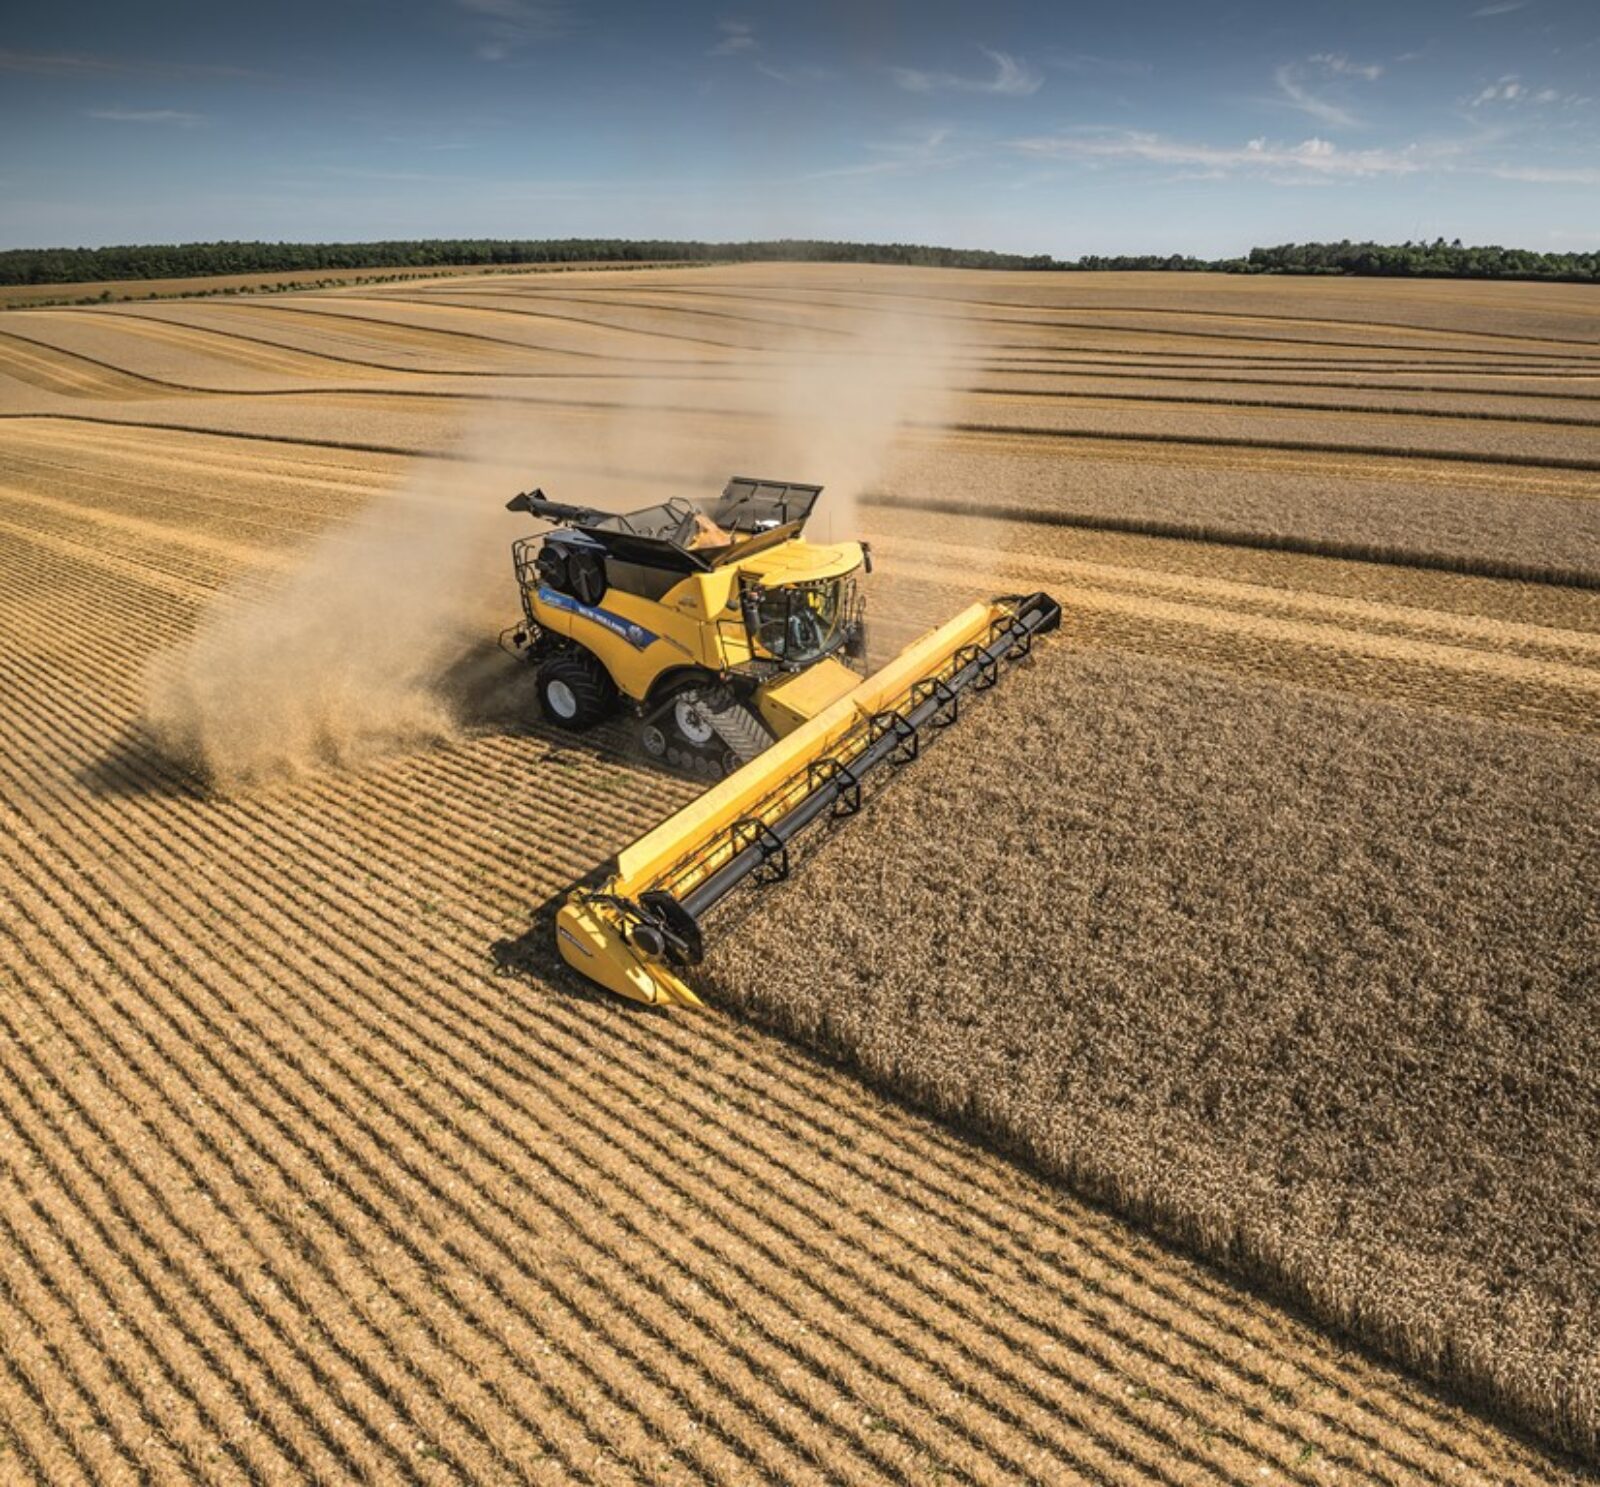 New Holland amplía la serie de cosechadoras CR Revelation y lleva la automatización a un nuevo nivel